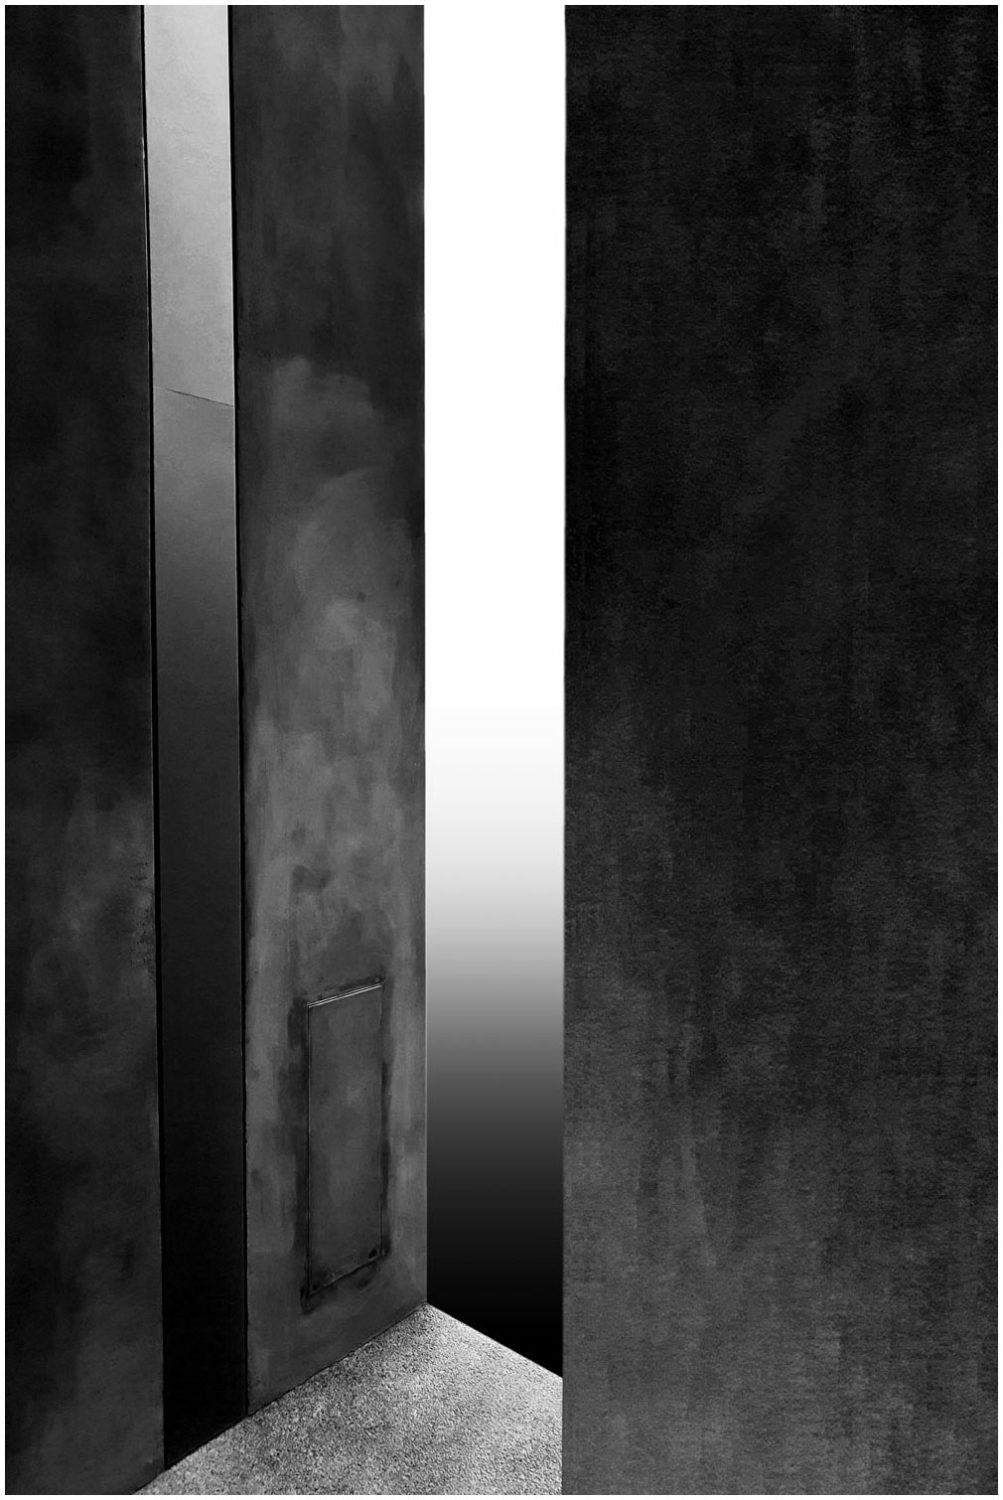 Bildmontage in Schwarz-Weiß: Ein Ein- oder Ausgang (ohne Tür) mit Blick auf einen Grauverlauf.